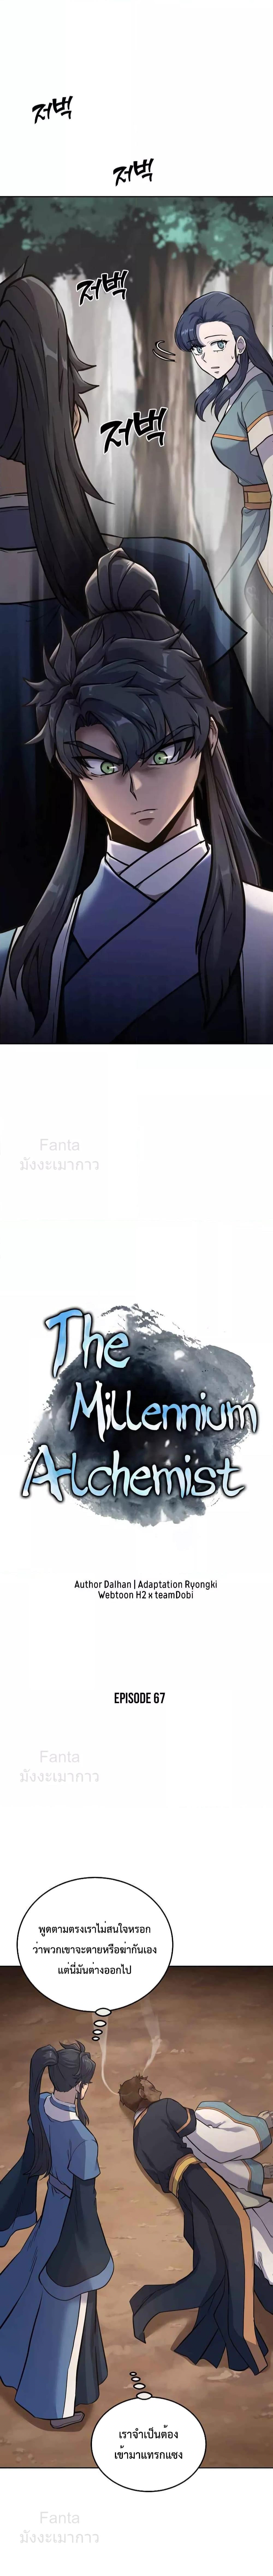 Millennium Spinning 67 09